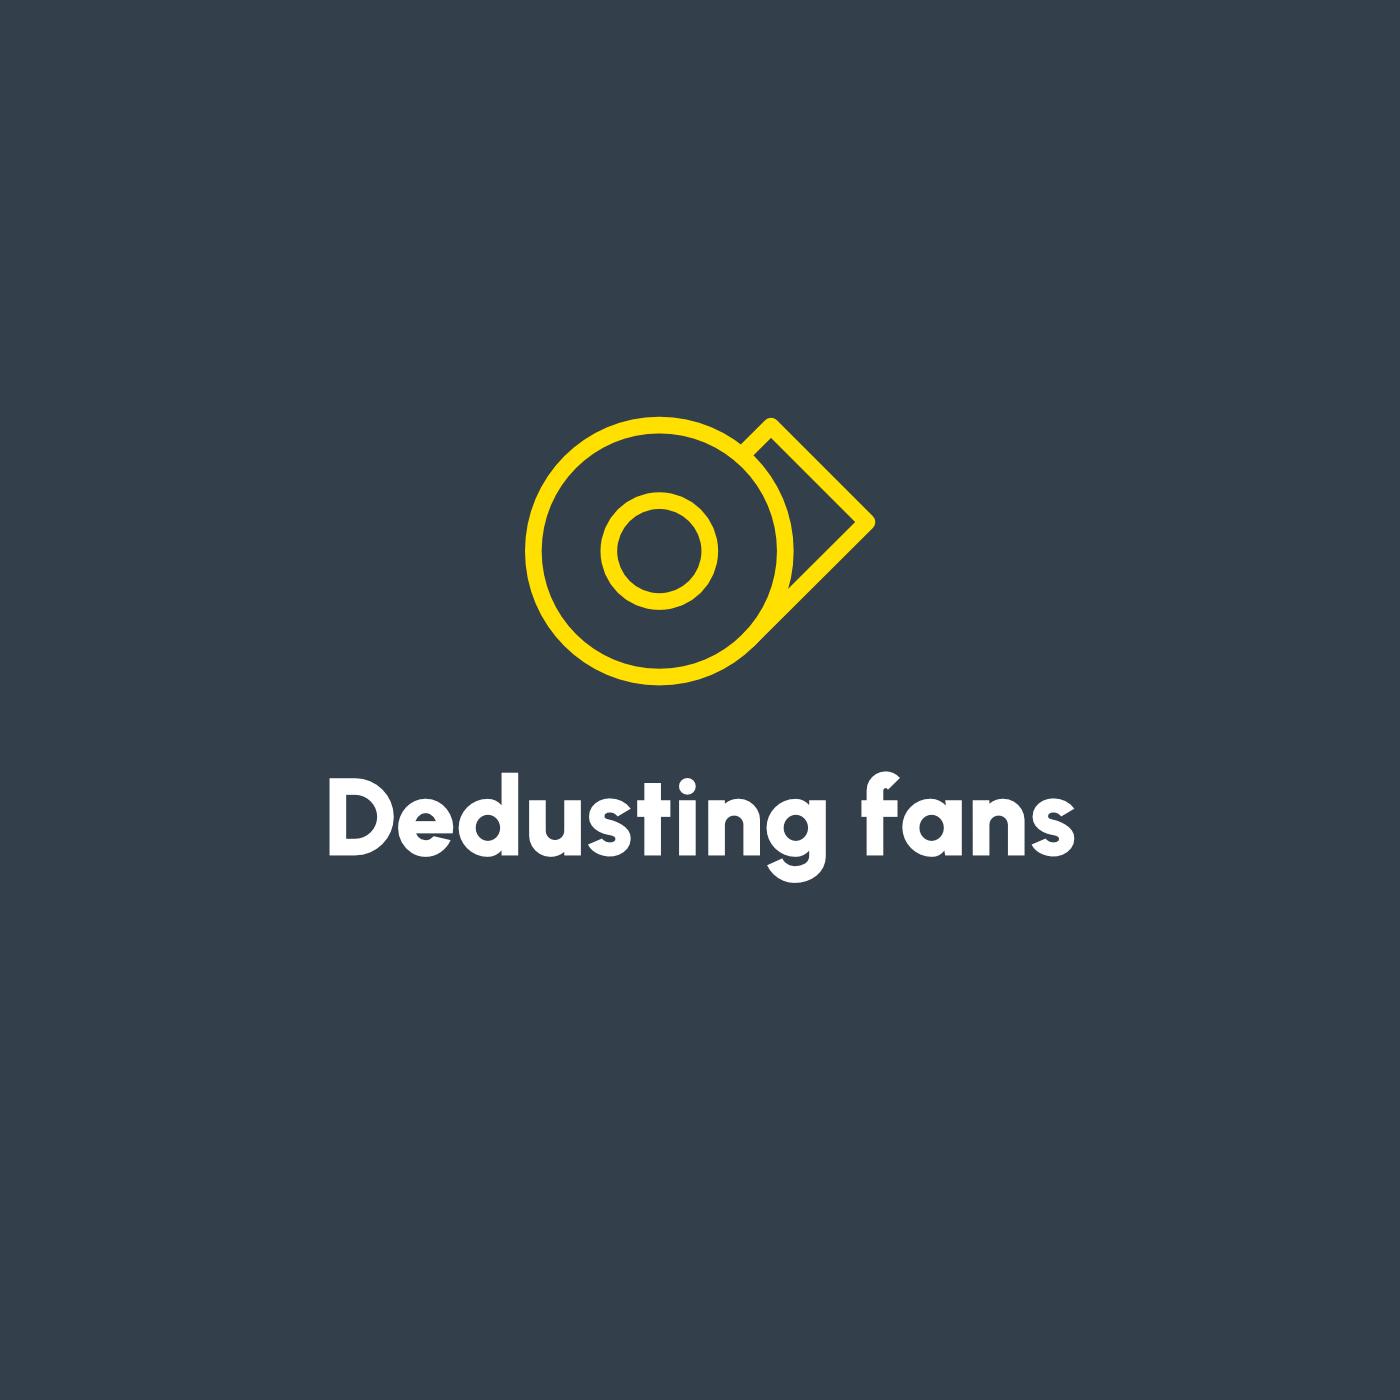 Image for Dedusting fans